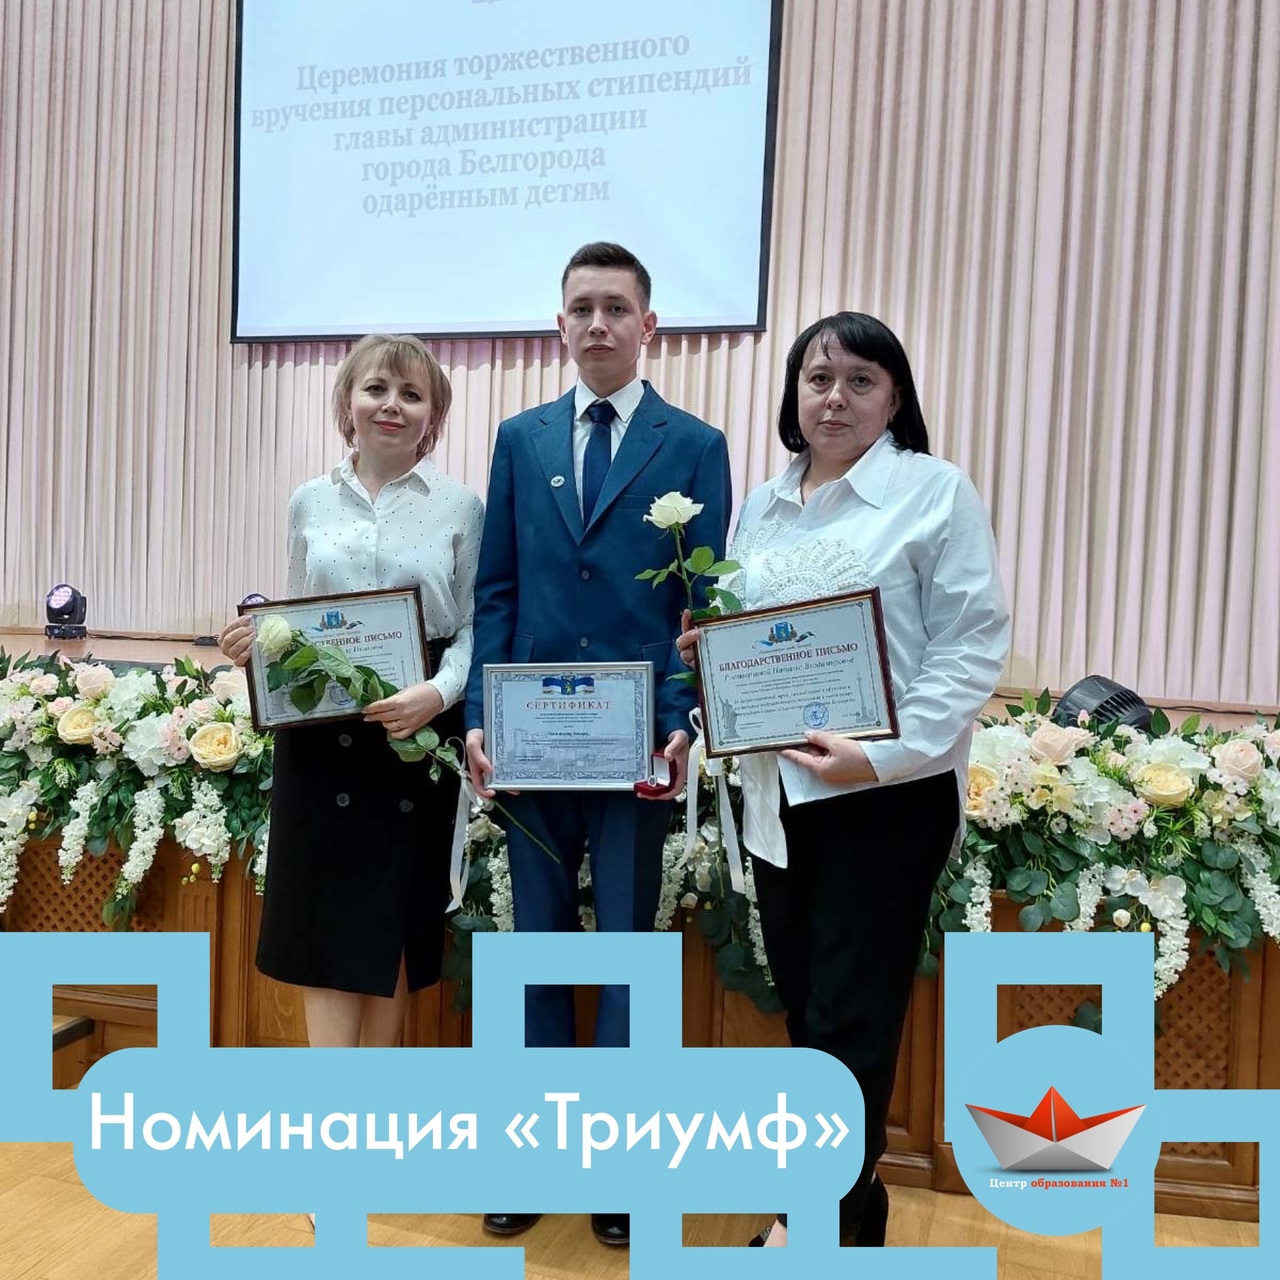 1 марта состоялась торжественная церемония награждения стипендиатов персональной премии главы администрации города Белгорода и и их наставников.